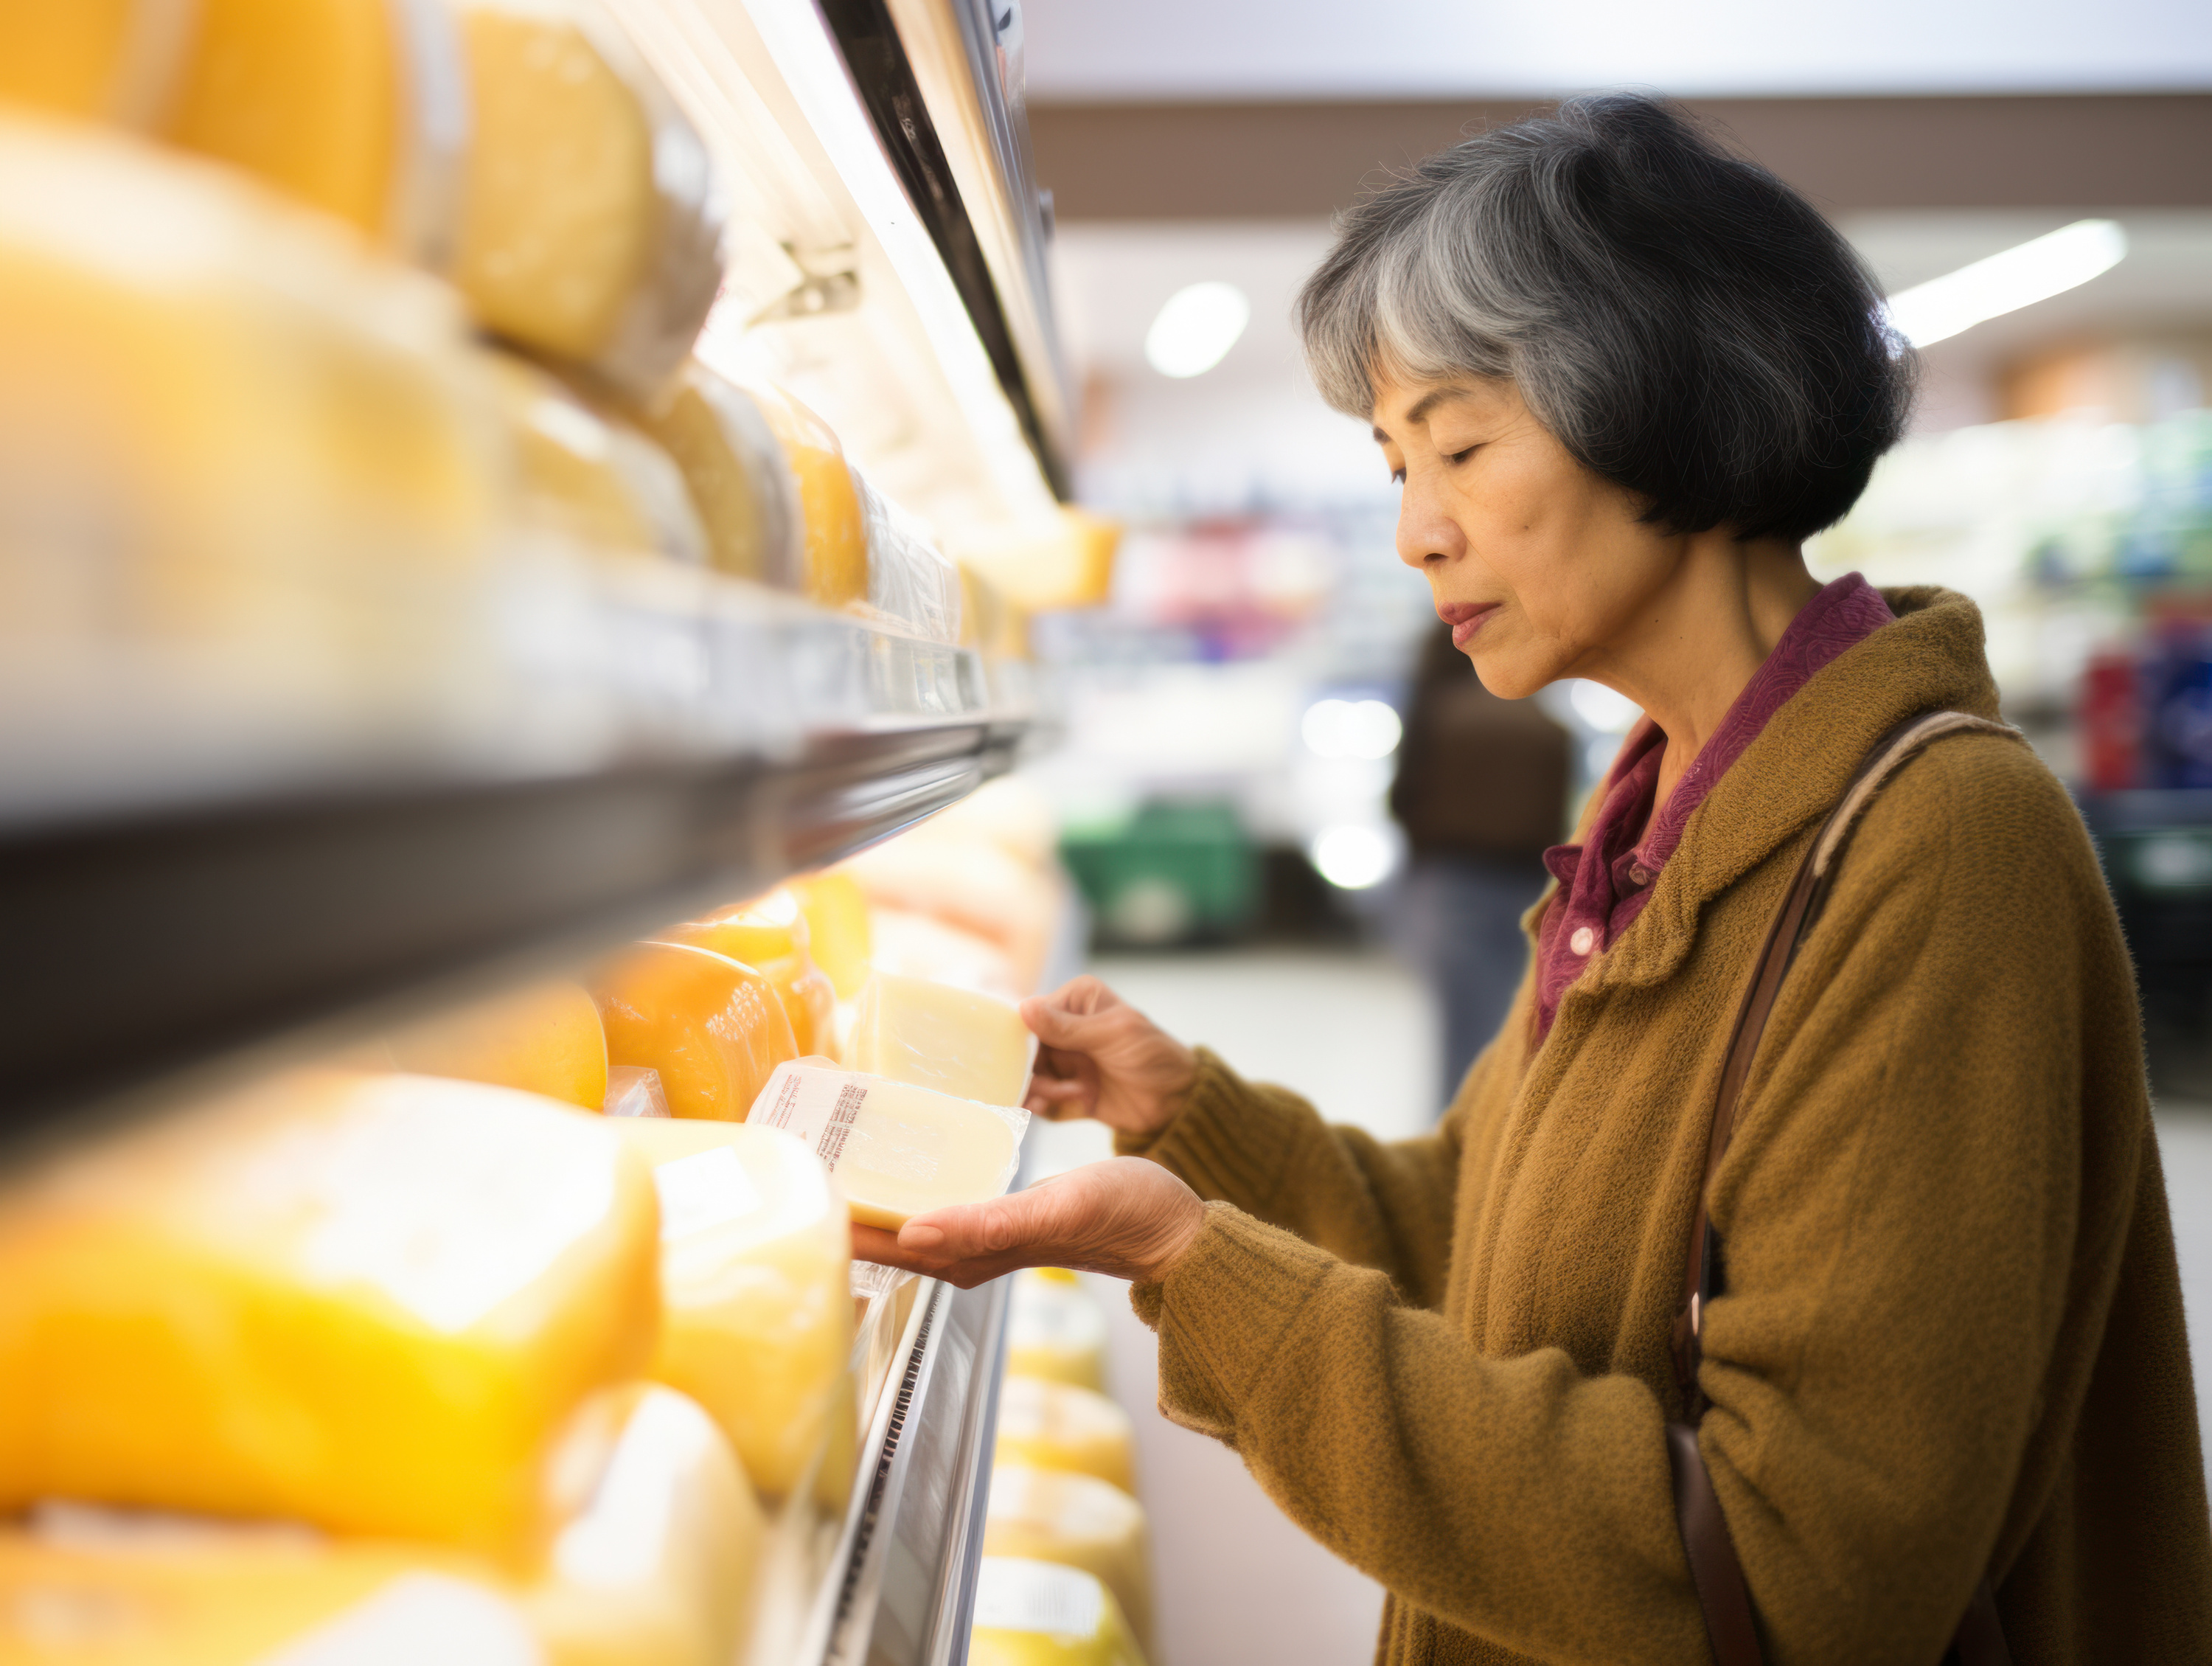 Une consommation raisonnable de fromage pourrait protéger du déclin cognitif lié à l'âge. © kalafoto, Adobe Stock